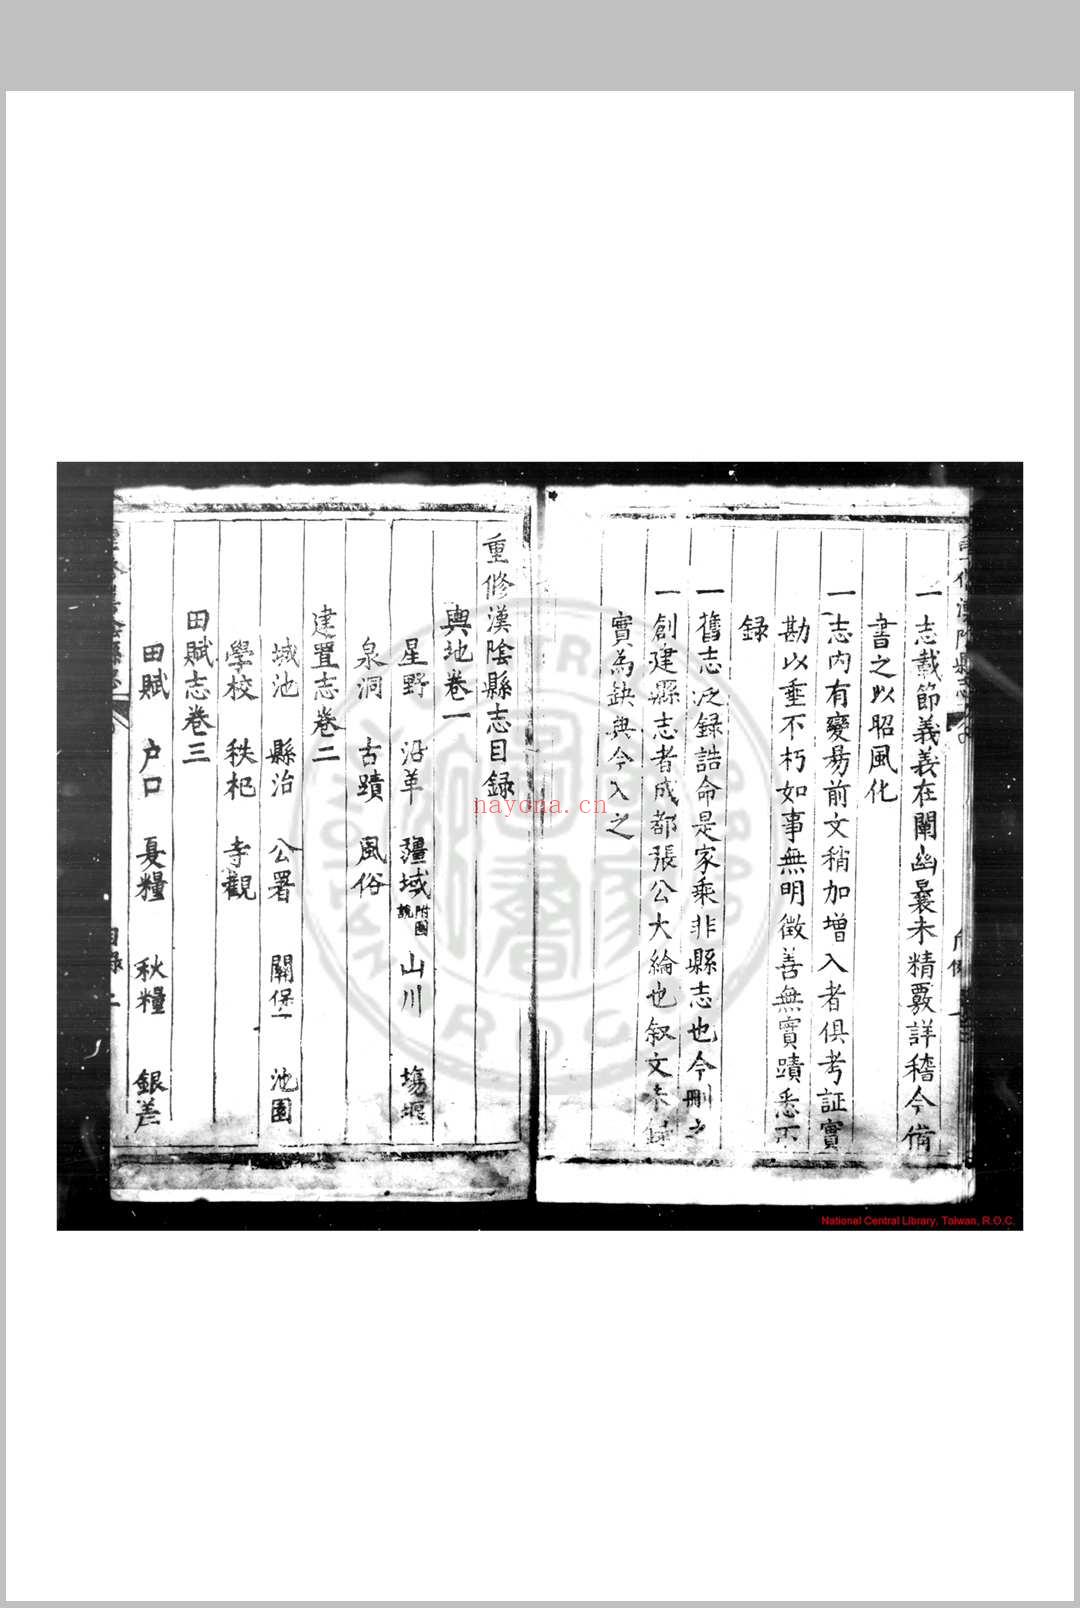 重修汉阴县志 (明)张启蒙, (明)柏可用等纂修 明万历戊午(四十六年, 1618)刊本